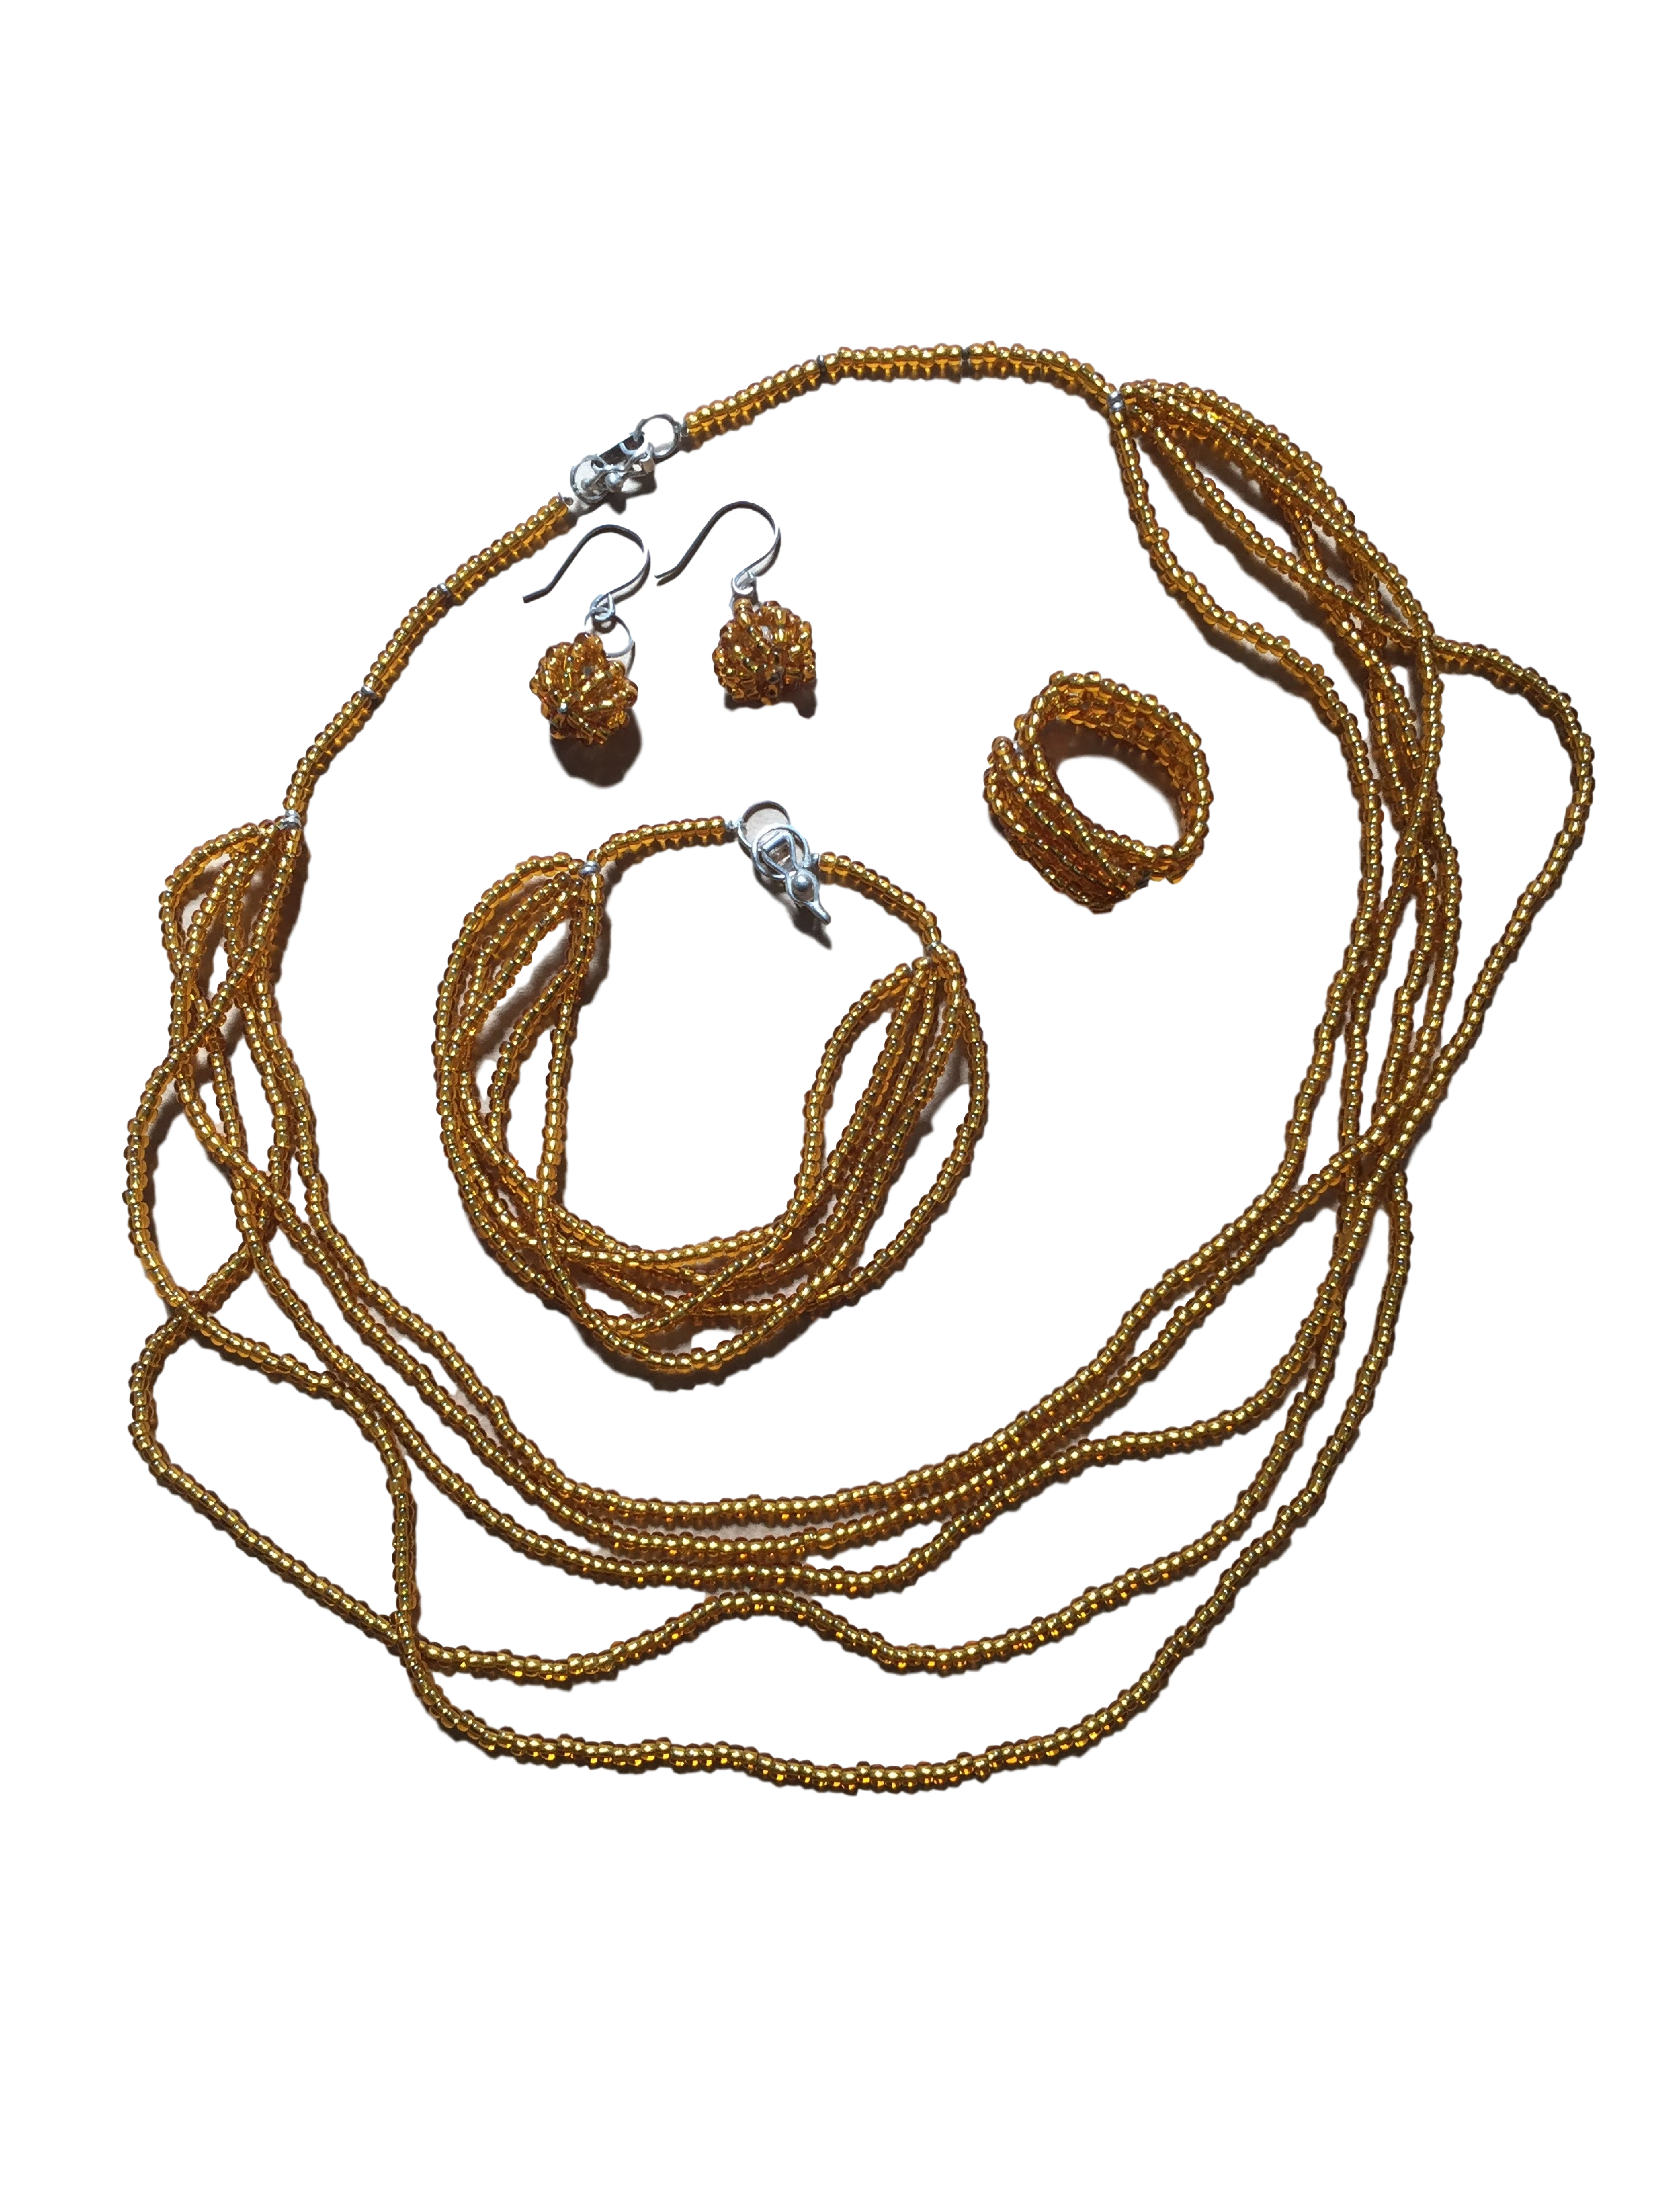 Conjunto collar, pulsera, aretes y anillo de mostacillas mostaza, con broche de plata 950